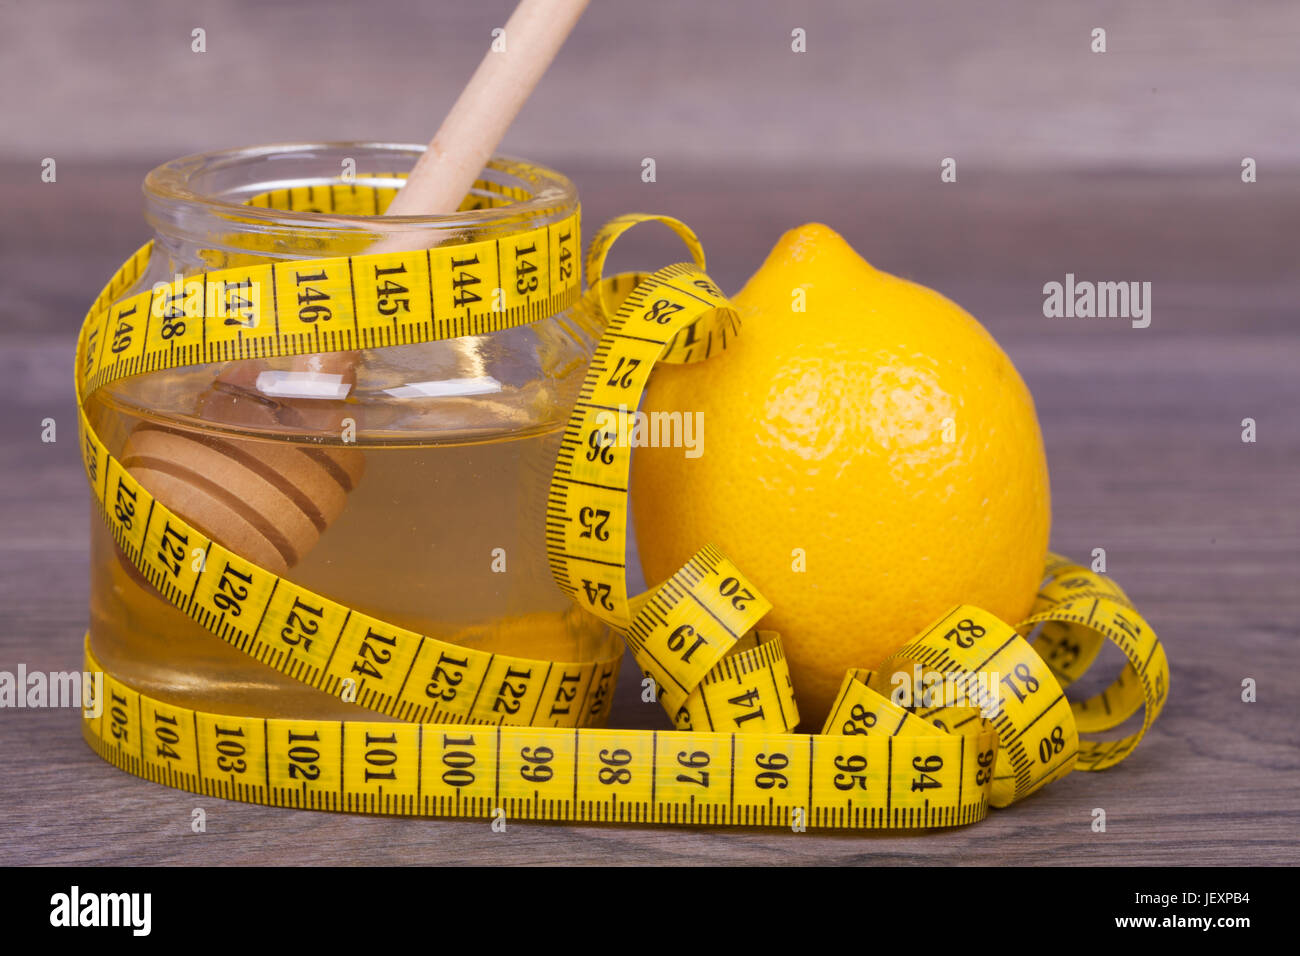 Honig und Zitrone auf einem hölzernen Hintergrund. Die Kombination von Honig und Zitrone dient zur Gewichtsreduktion und zur Stärkung des Immunsystems des Körpers. Stockfoto